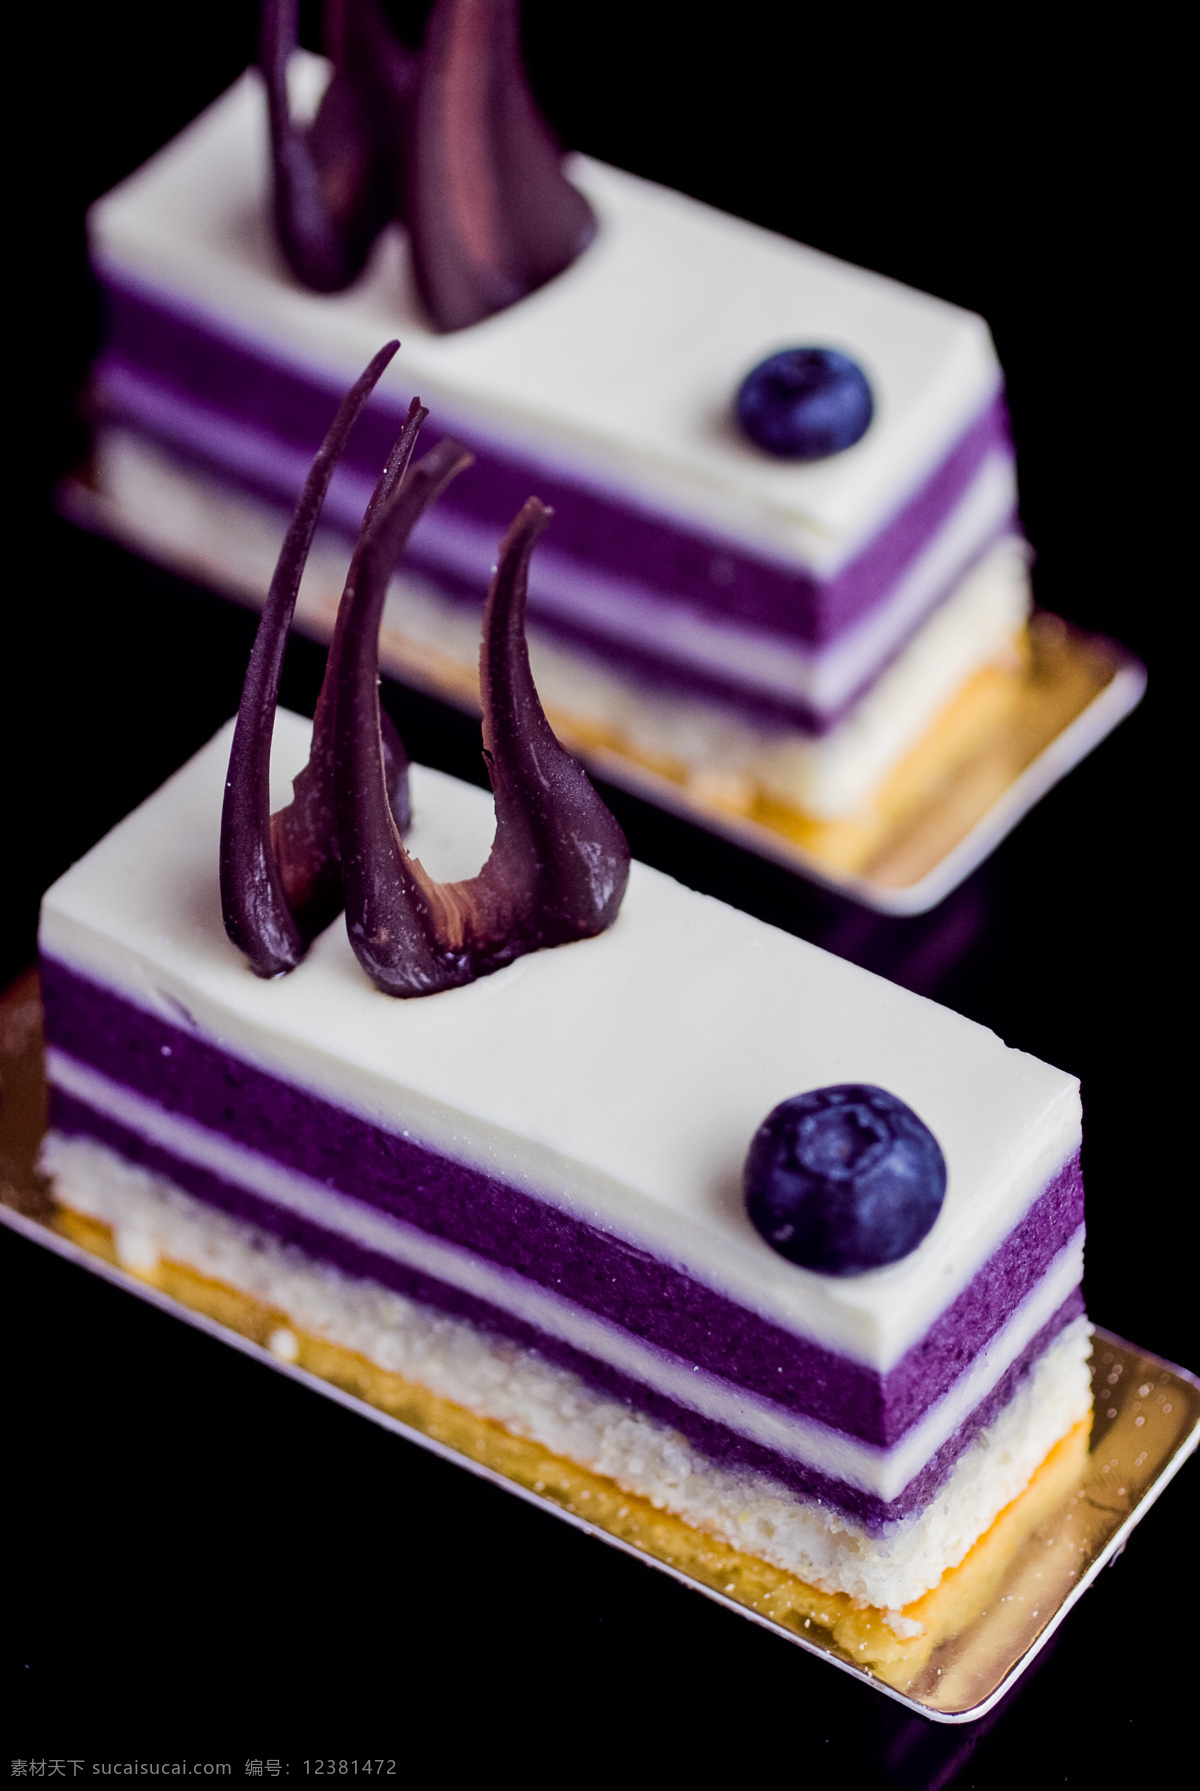 蓝莓芝士蛋糕 蓝莓 芝士 蛋糕 甜品 甜点 午后 西餐美食 餐饮美食